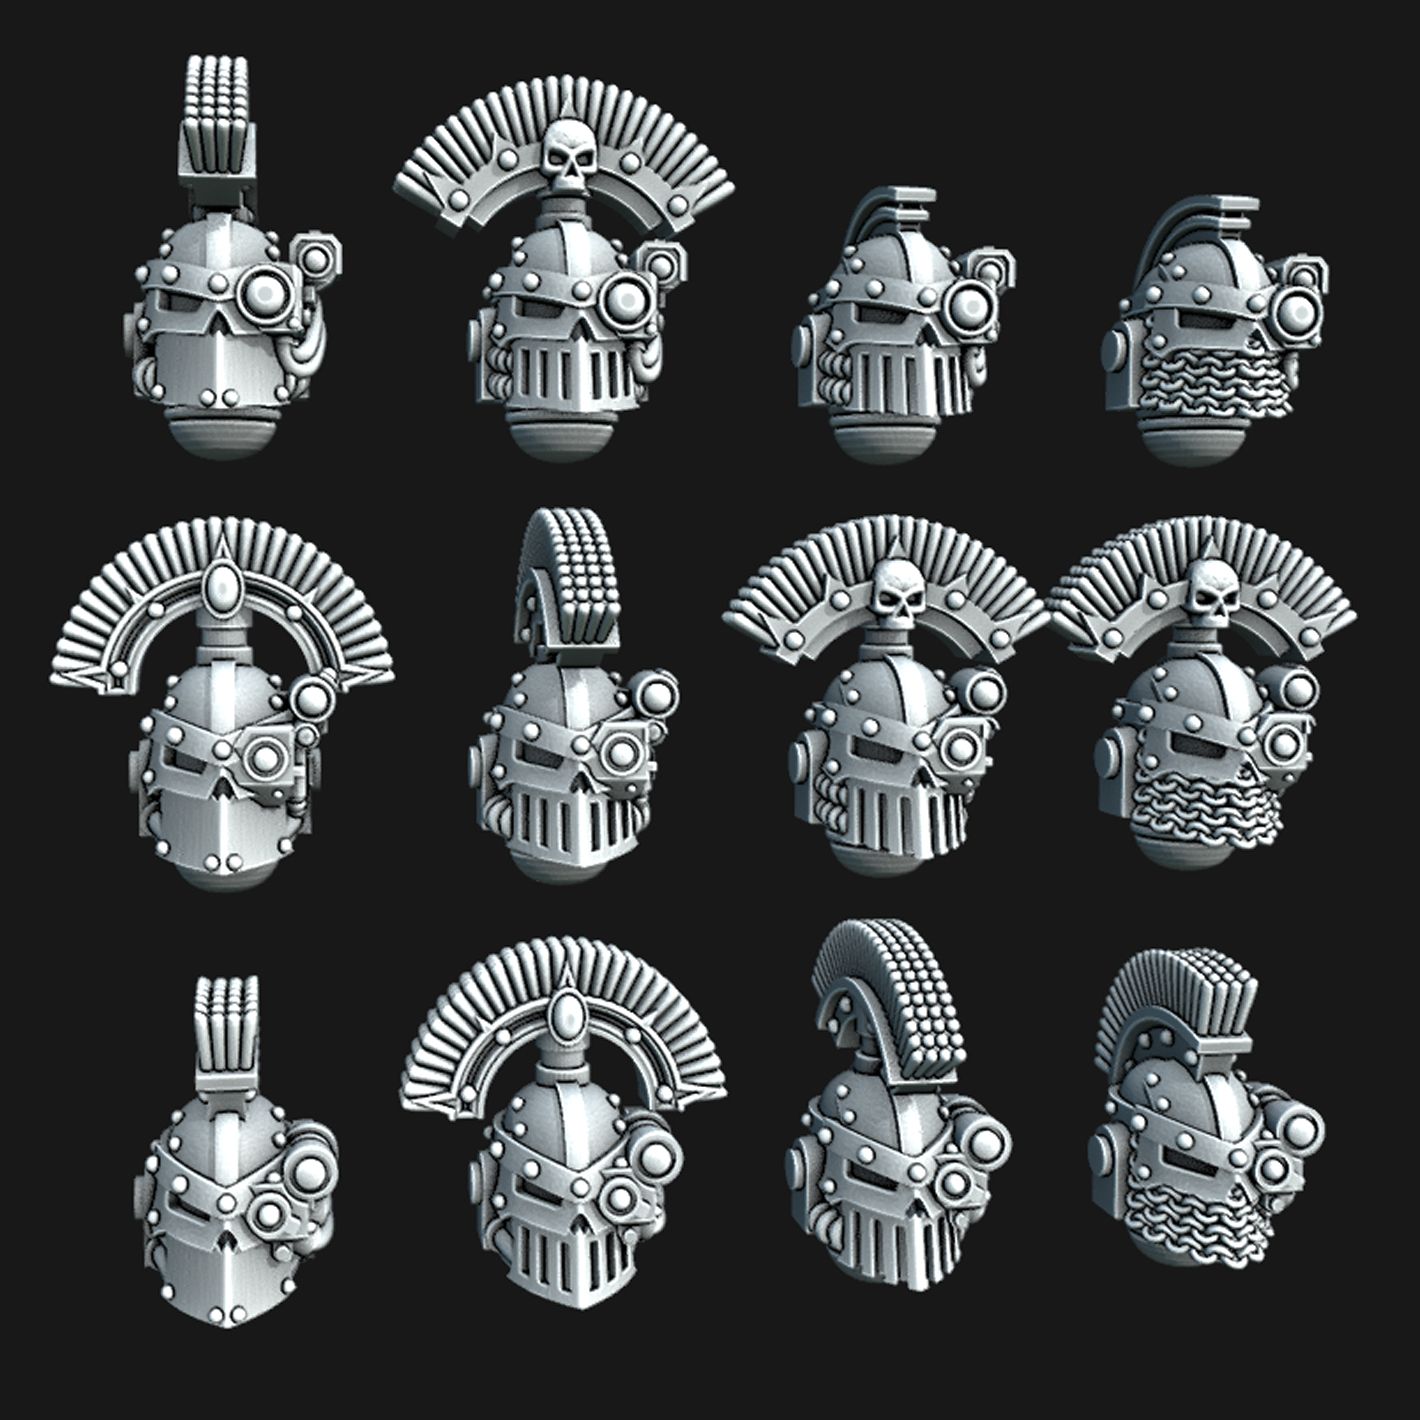 Sight-Crest.jpg Файл 3D Шлемы с железным черепом・3D-печатная модель для загрузки, Red-warden-miniatures